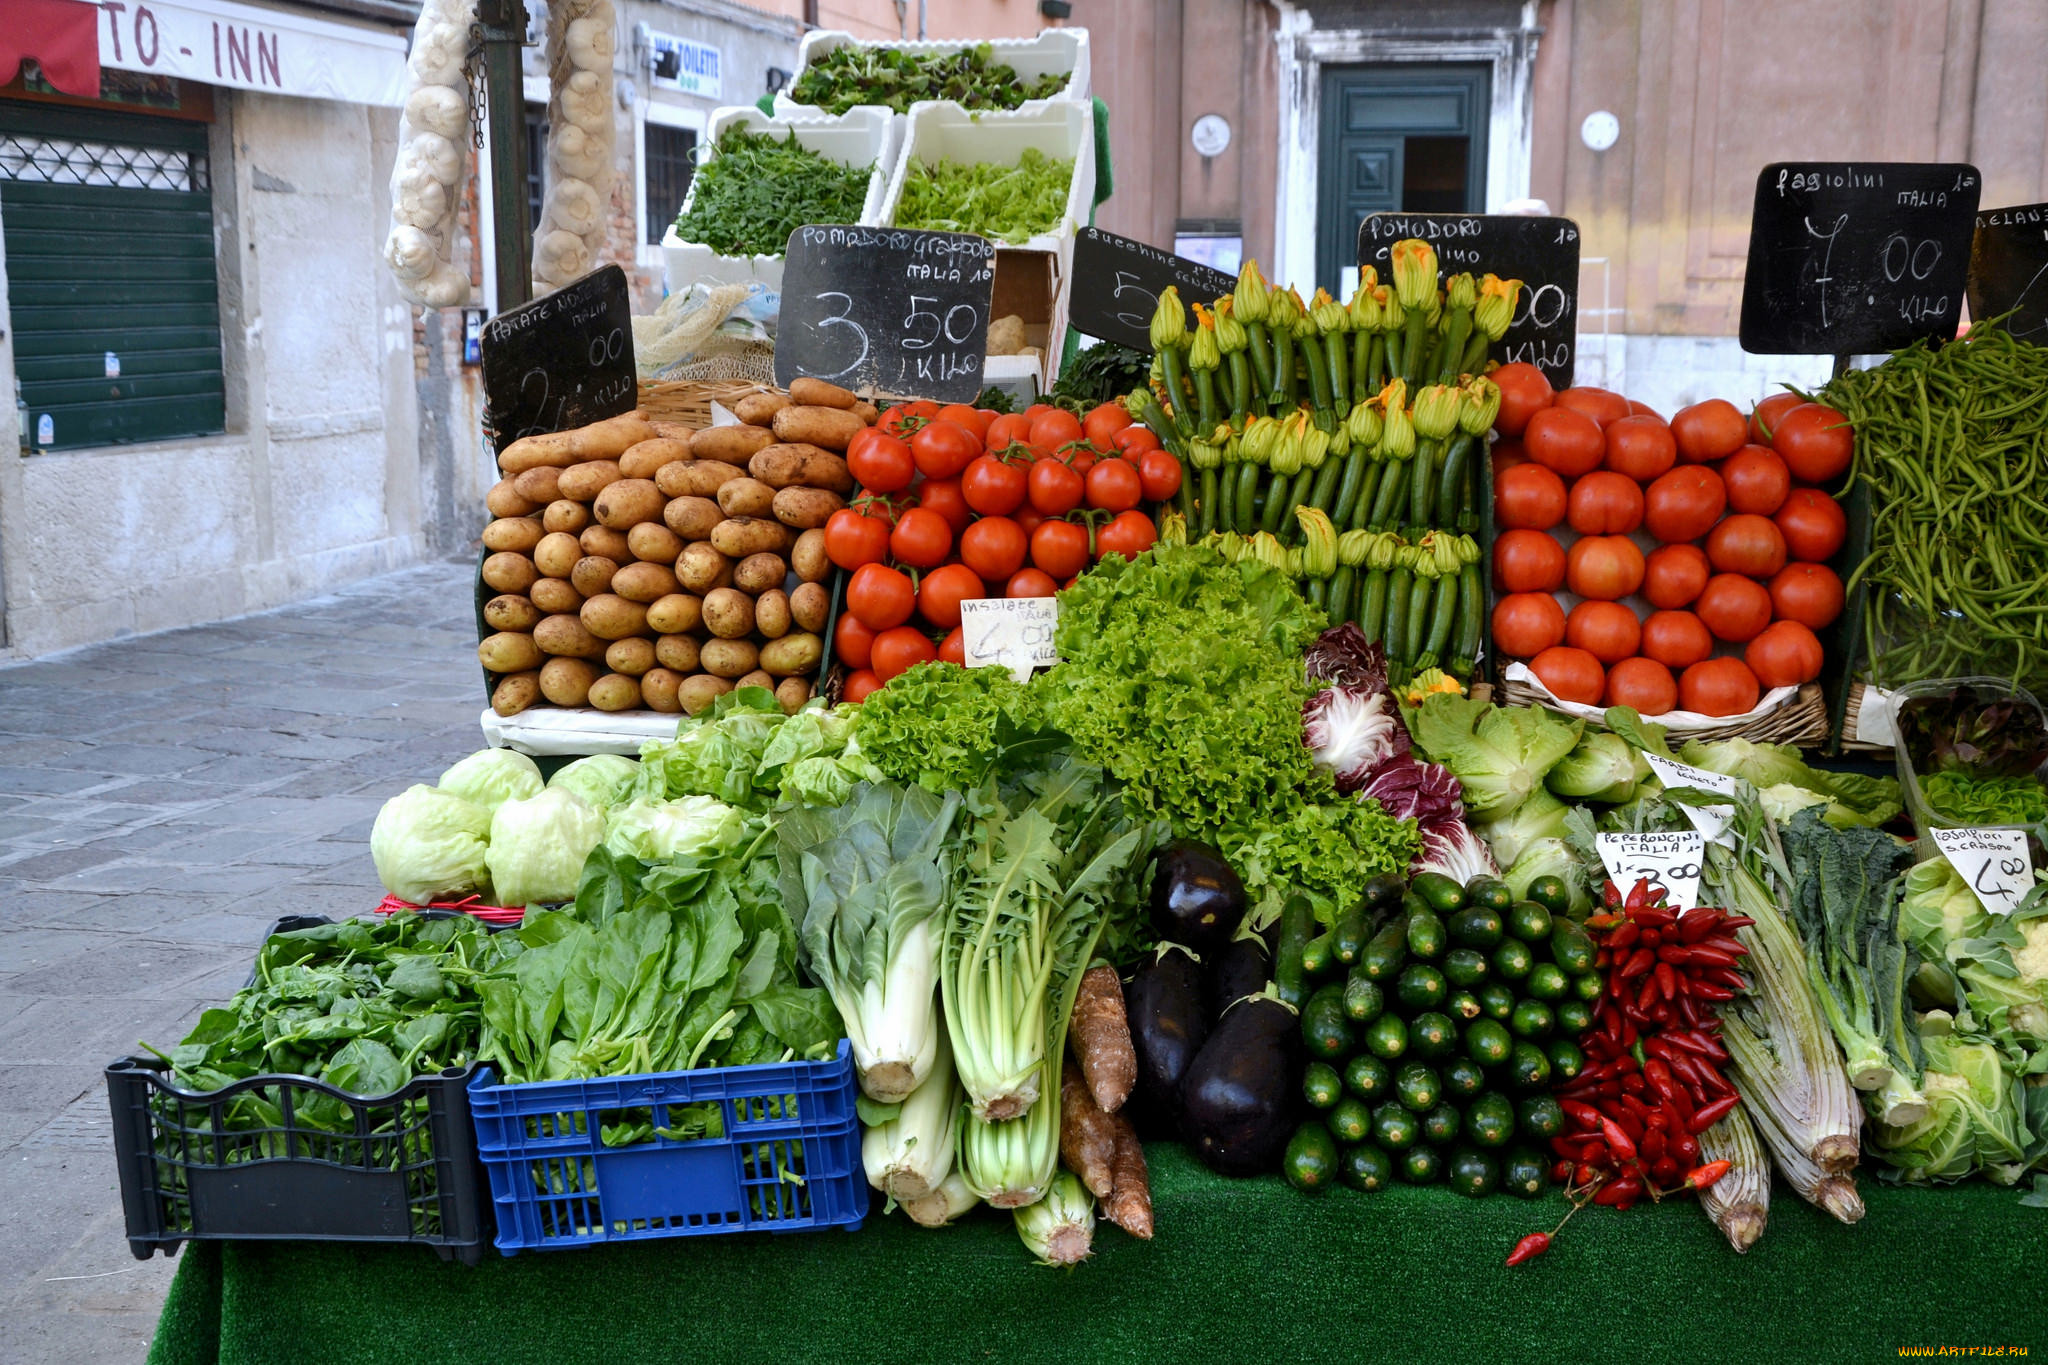 Рынок витрины. Овощи на прилавке. Овощи на рынке. Прилавок с овощами и фруктами. Выкладка овощей и фруктов на рынке.